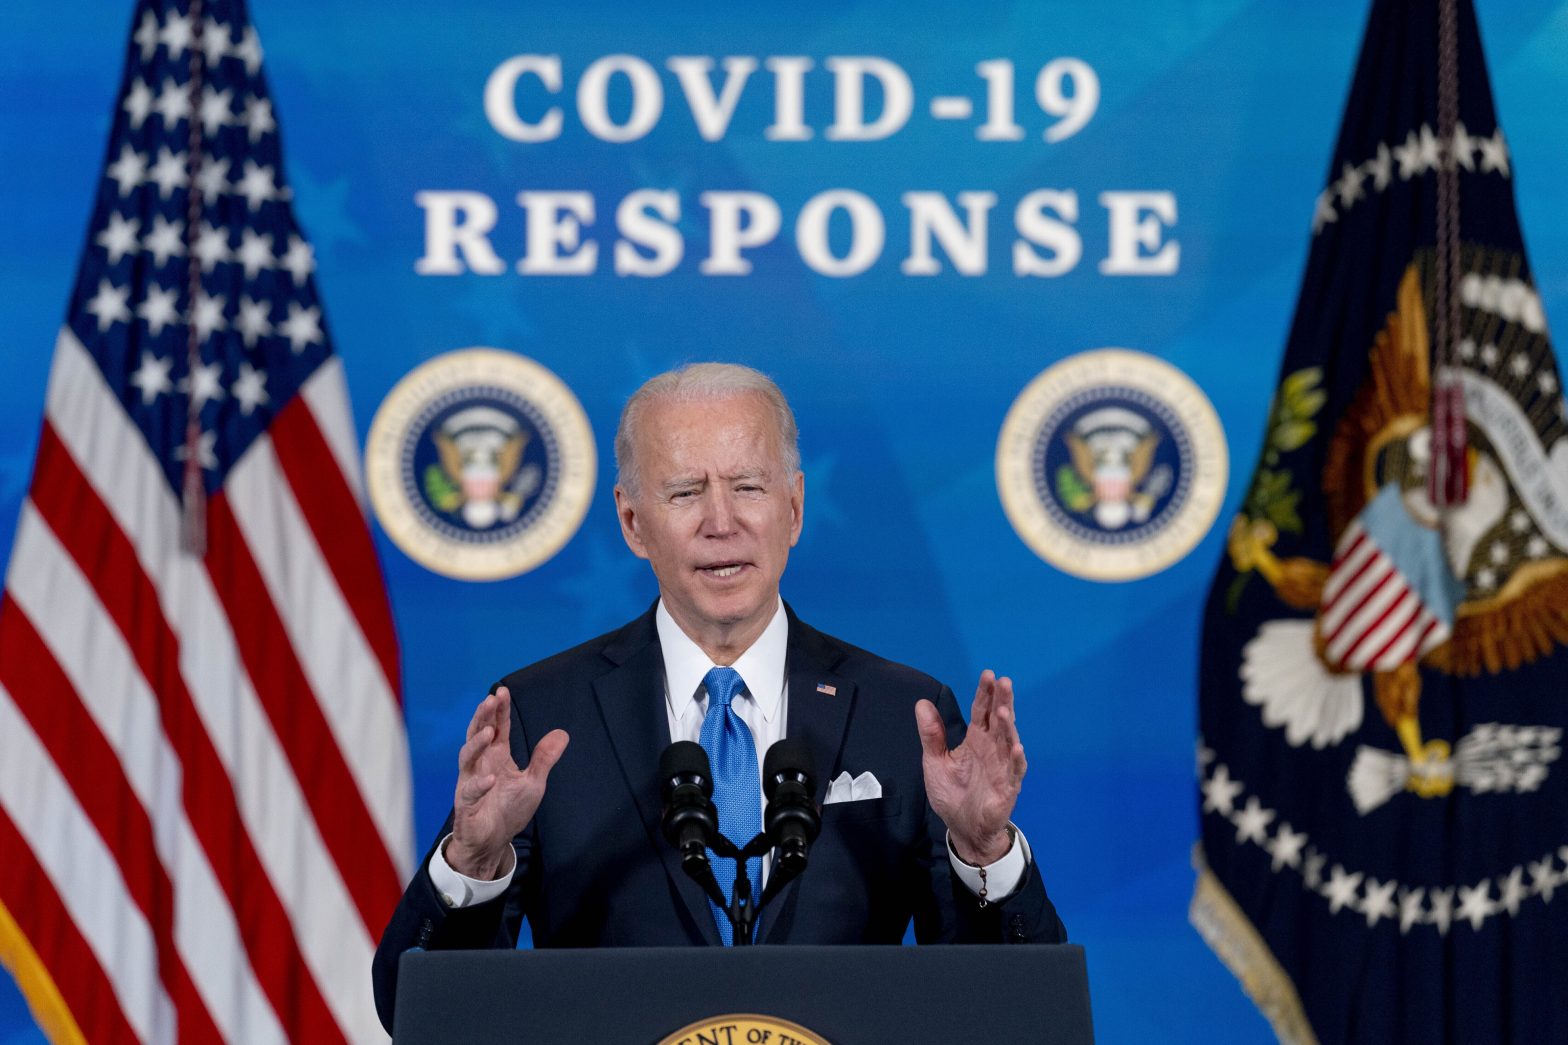 Biden’s Speech Goals: Mourn Loss, Urge Caution, Offer Hope